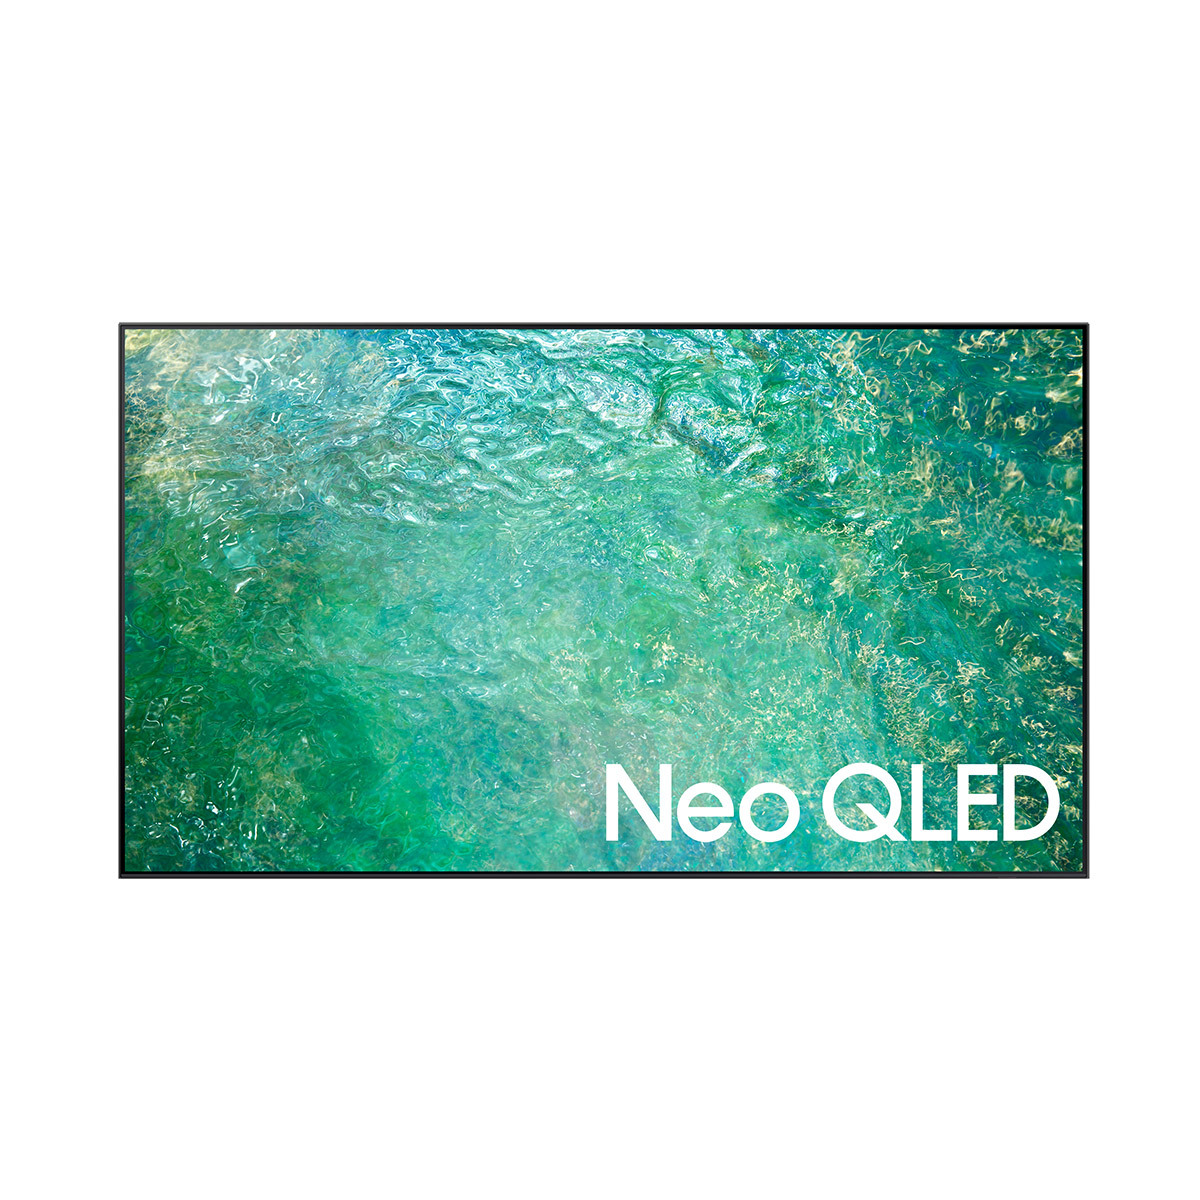 삼성 Neo QLED TV KQ65QNC83AFXKR 163cm (65)